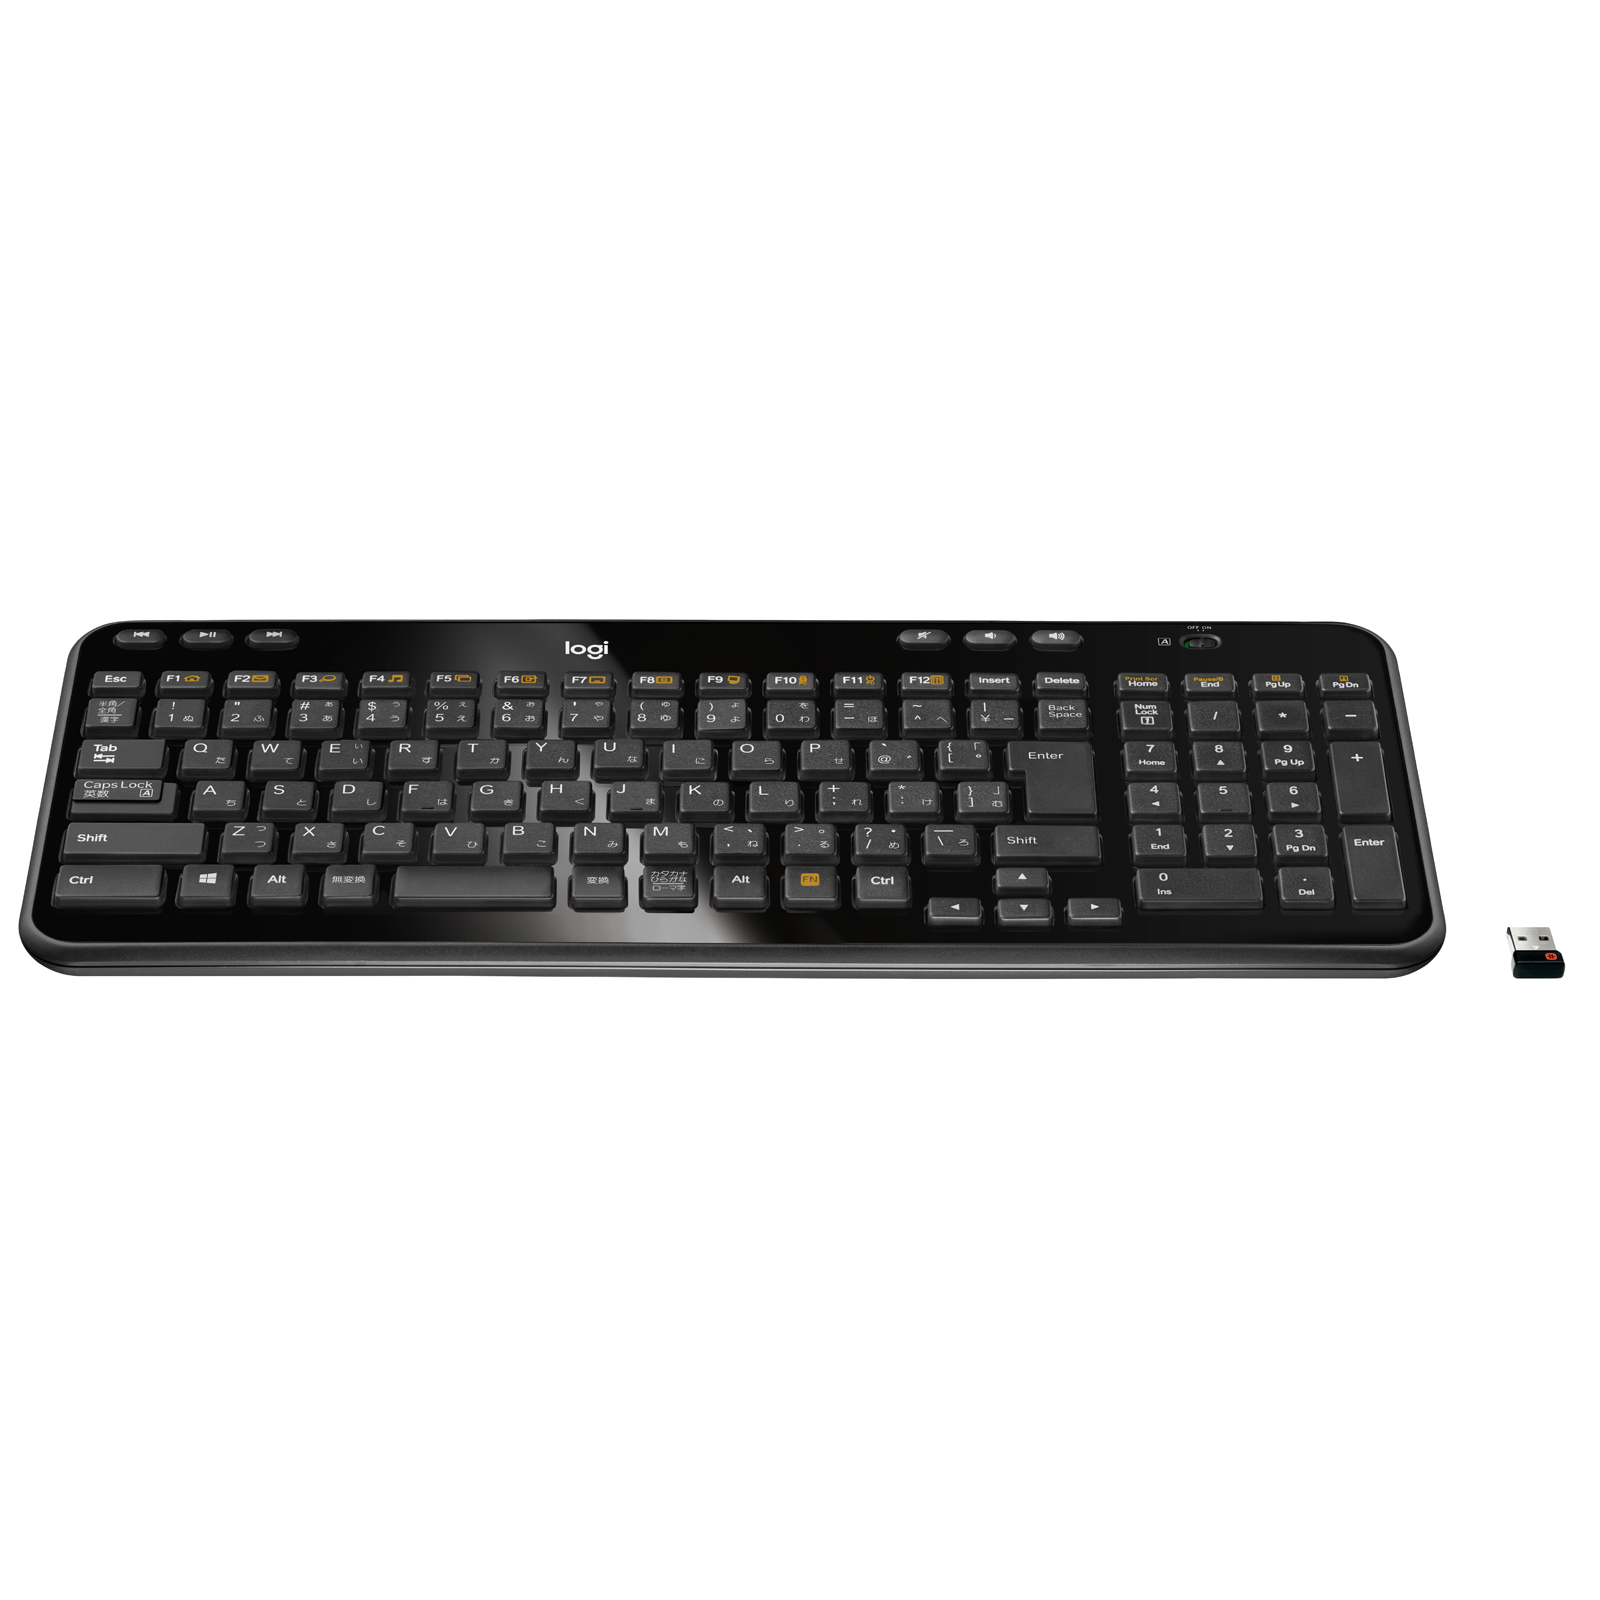 Logitech Wireless Keyboard K360 pas cher - HardWare.fr